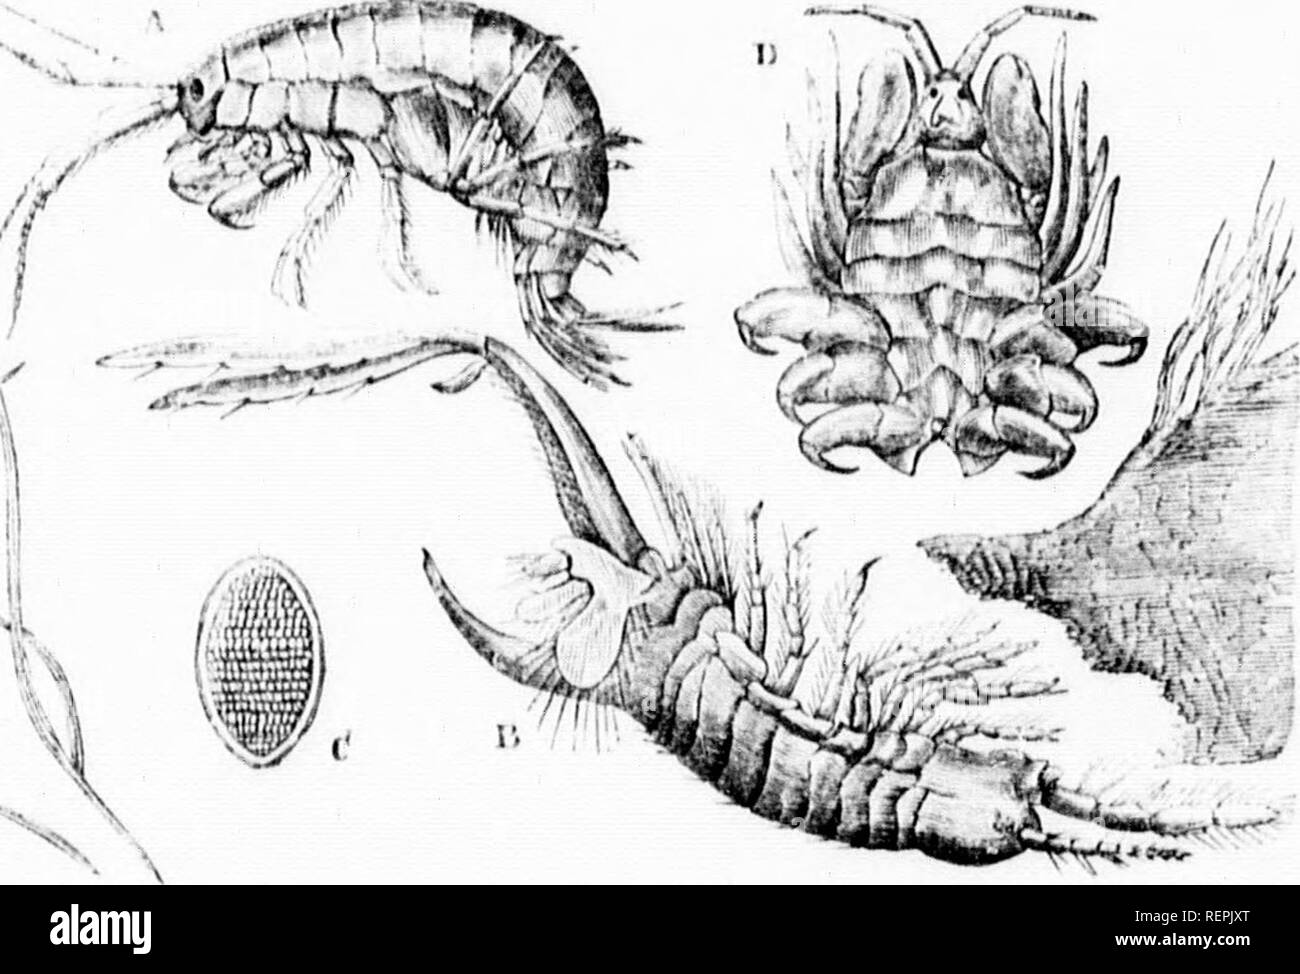 . The illustrated natural history [microform]. Reptiles; Fishes; Mollusks; Natural history; Reptiles; Poissons; Mollusques; Sciences naturelles. 11 l'&quot;i;i:sii-wATn! TFIR W()()n-I',ORIN(! SIIKT^ri'. 627 ,,#â¢ cesses in llie liiiulc ( ,l;ir Irl reee.s.se.s m n,e naâK or uiuier slânes tl,;,t i;,,,,, ,1,., iââi â,â¢ i,â, sfvoarn, nronsionnllv .hiiieinselvesa v:,r.l ur wo â]. II,.. nvulel, l,ât uv. sure (o enn,,. (In.ti,,.,- l,;,ek n-.un Ue very lu,.,^ â1 Unno- luMnselves jo l,e ,,âssively swept ,,lnâ.. I,vll,e rnre.T.n l,e ^ lntl,ew;,lern,isen,sl;,ee;u, inove. l,y, series ..f jerks, ,nâl ,nus Stock Photo